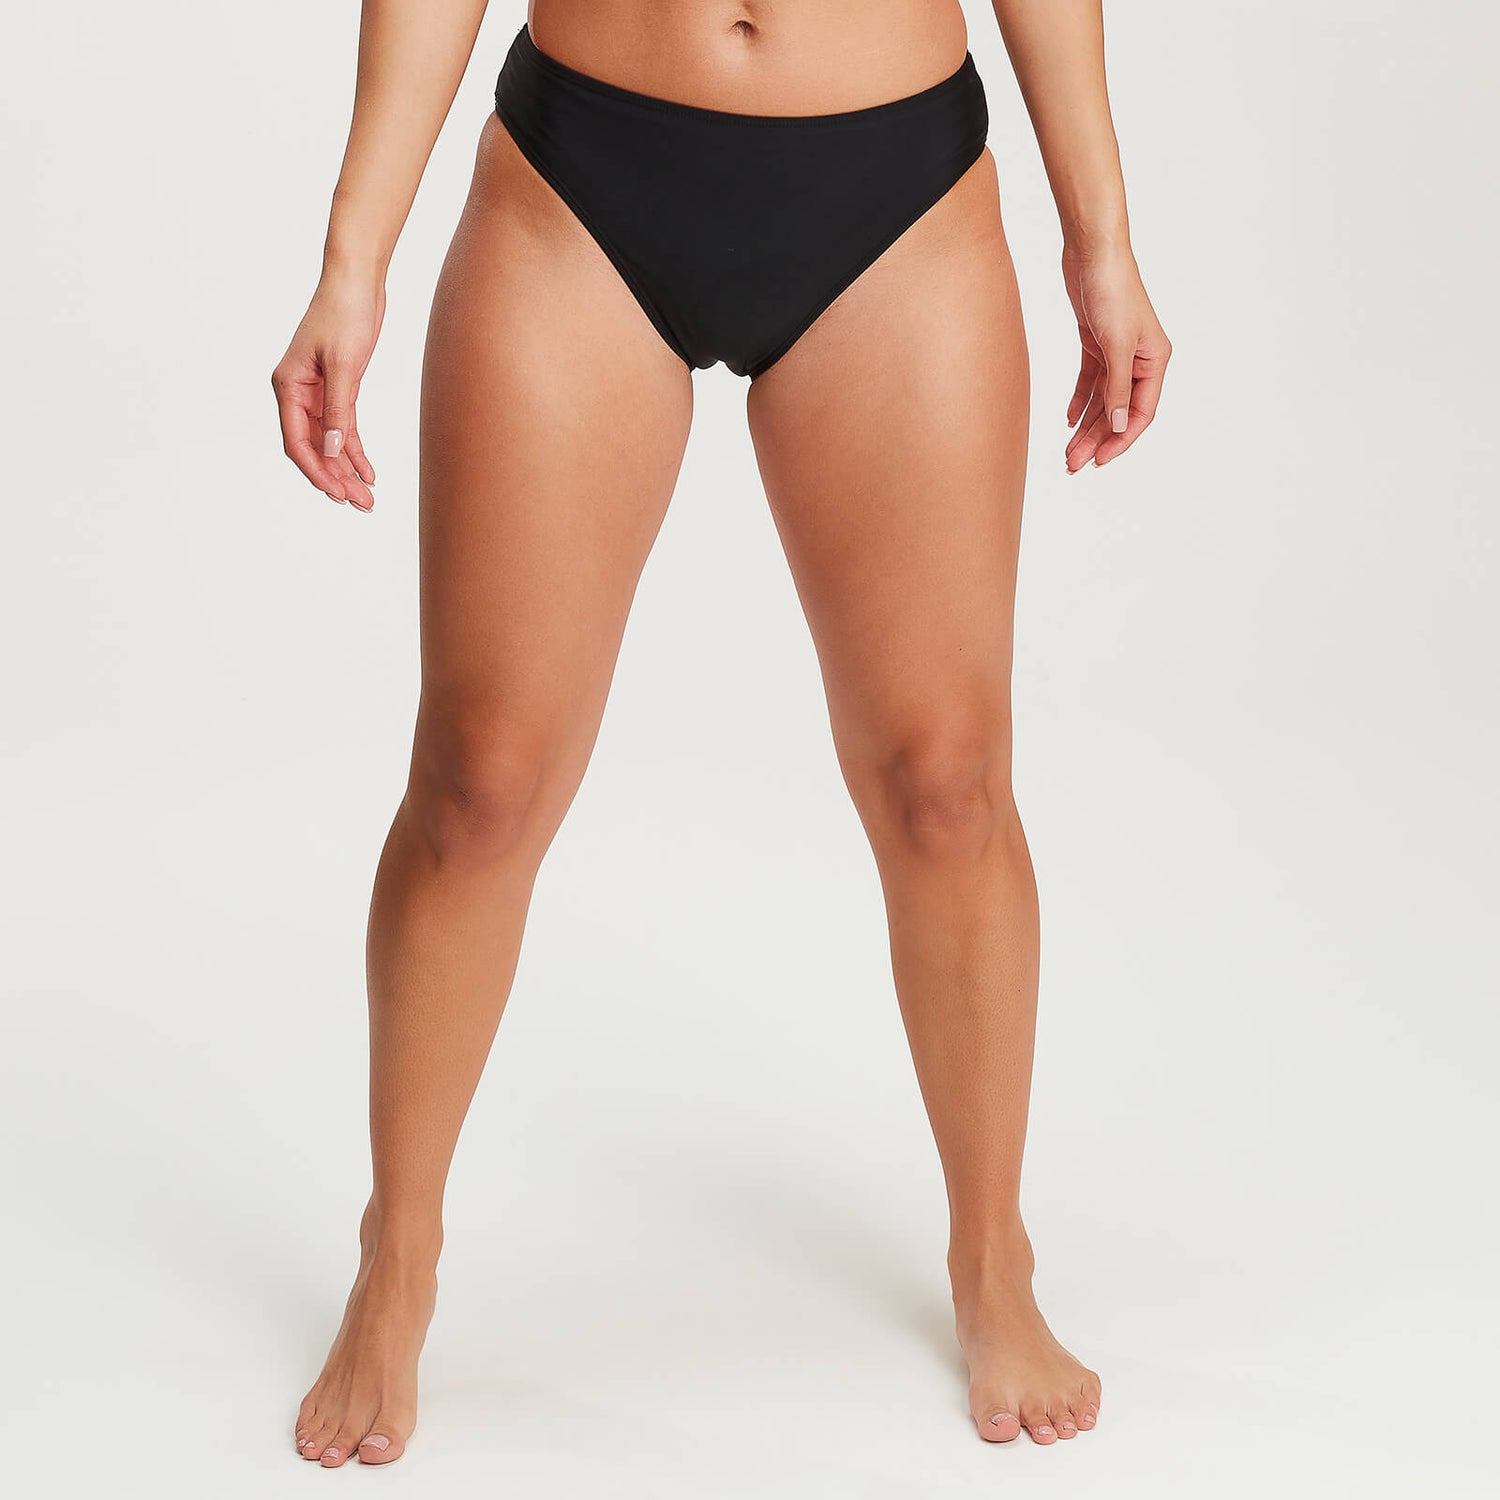 MP ženski Bikini donji dio - crna boja - XS